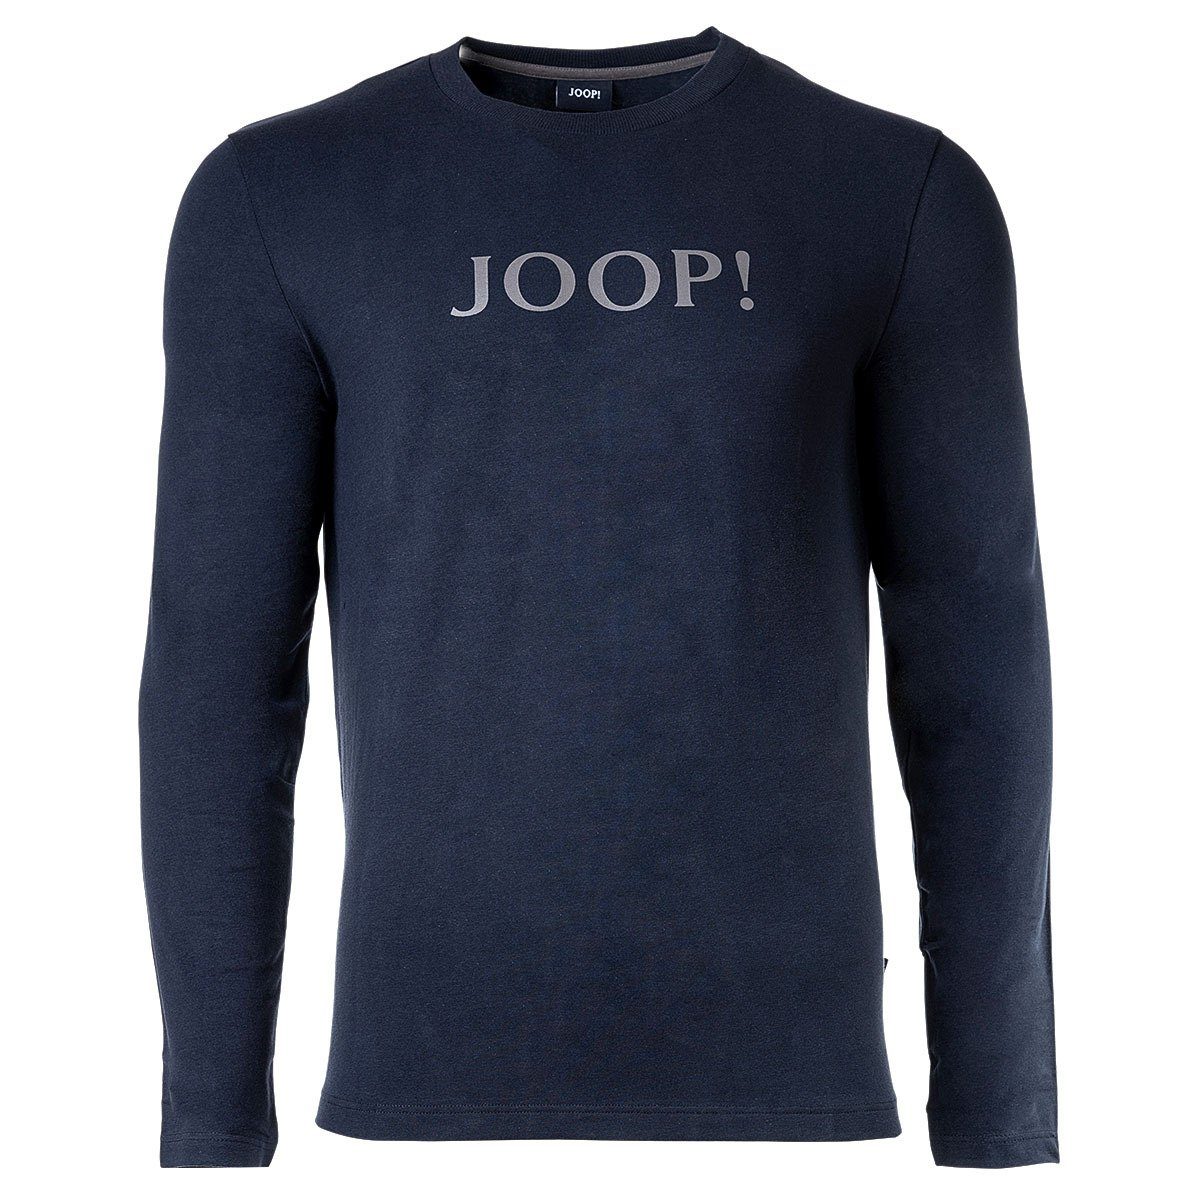 Loungewear, - Joop! Langarm-Shirt Blau Rundhals Herren T-Shirt